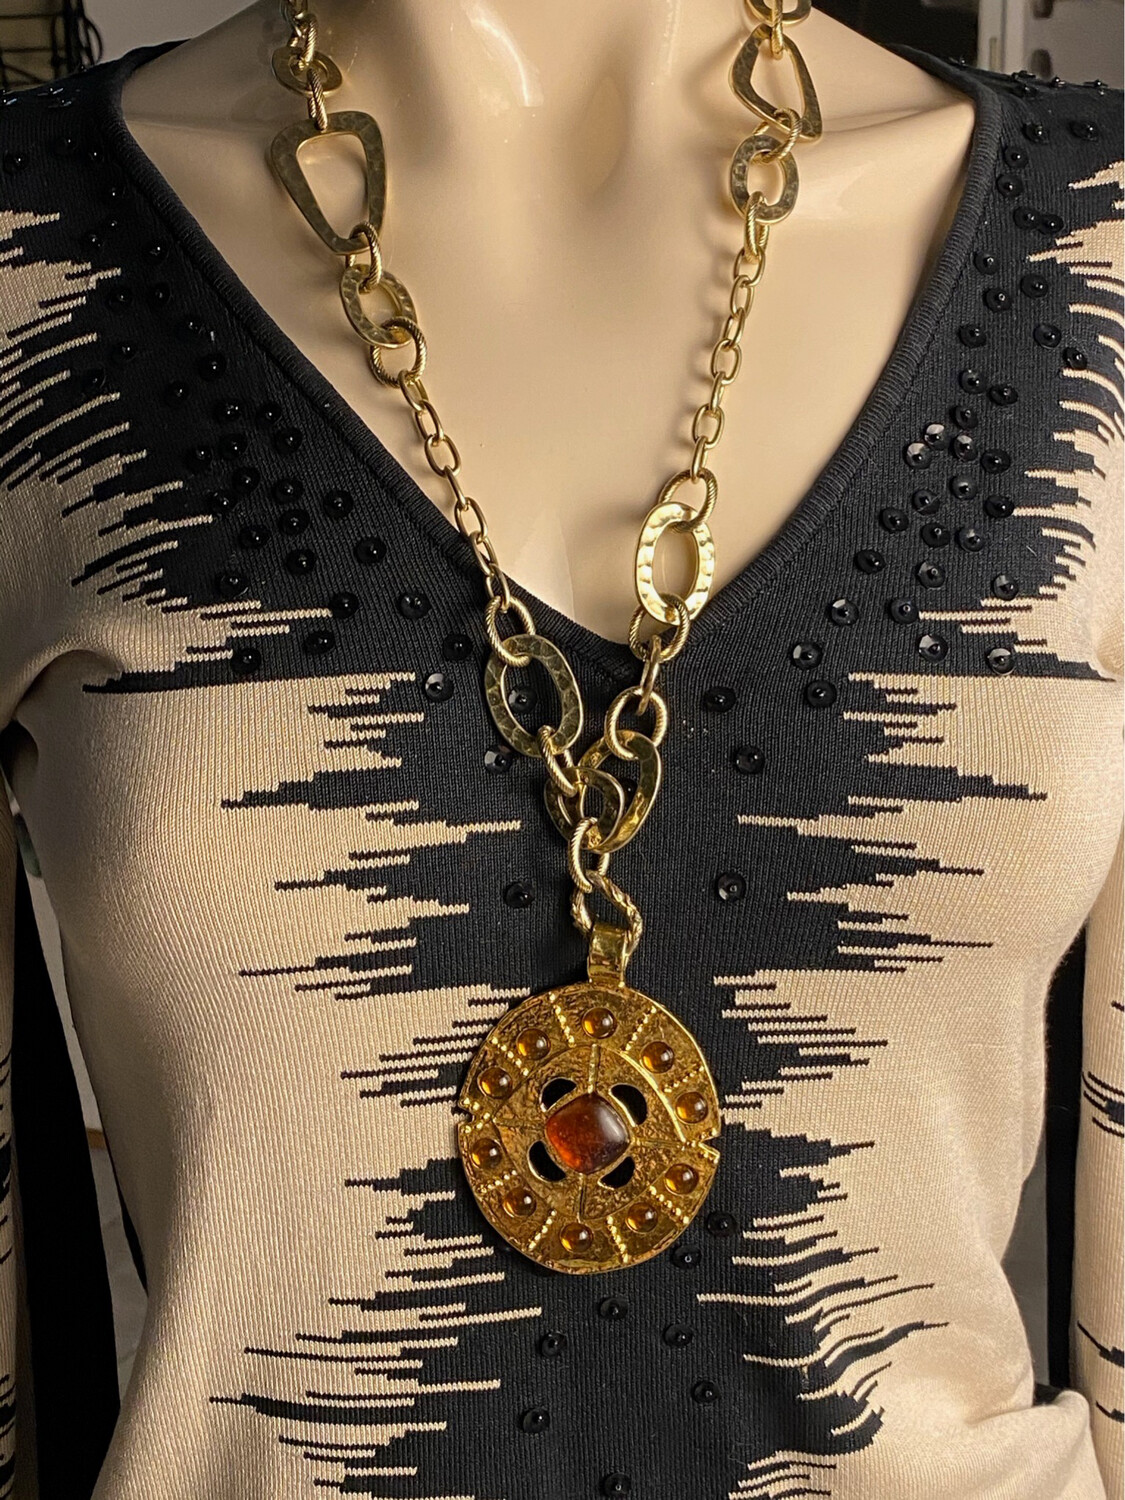 DOLCE VITA vintage necklace